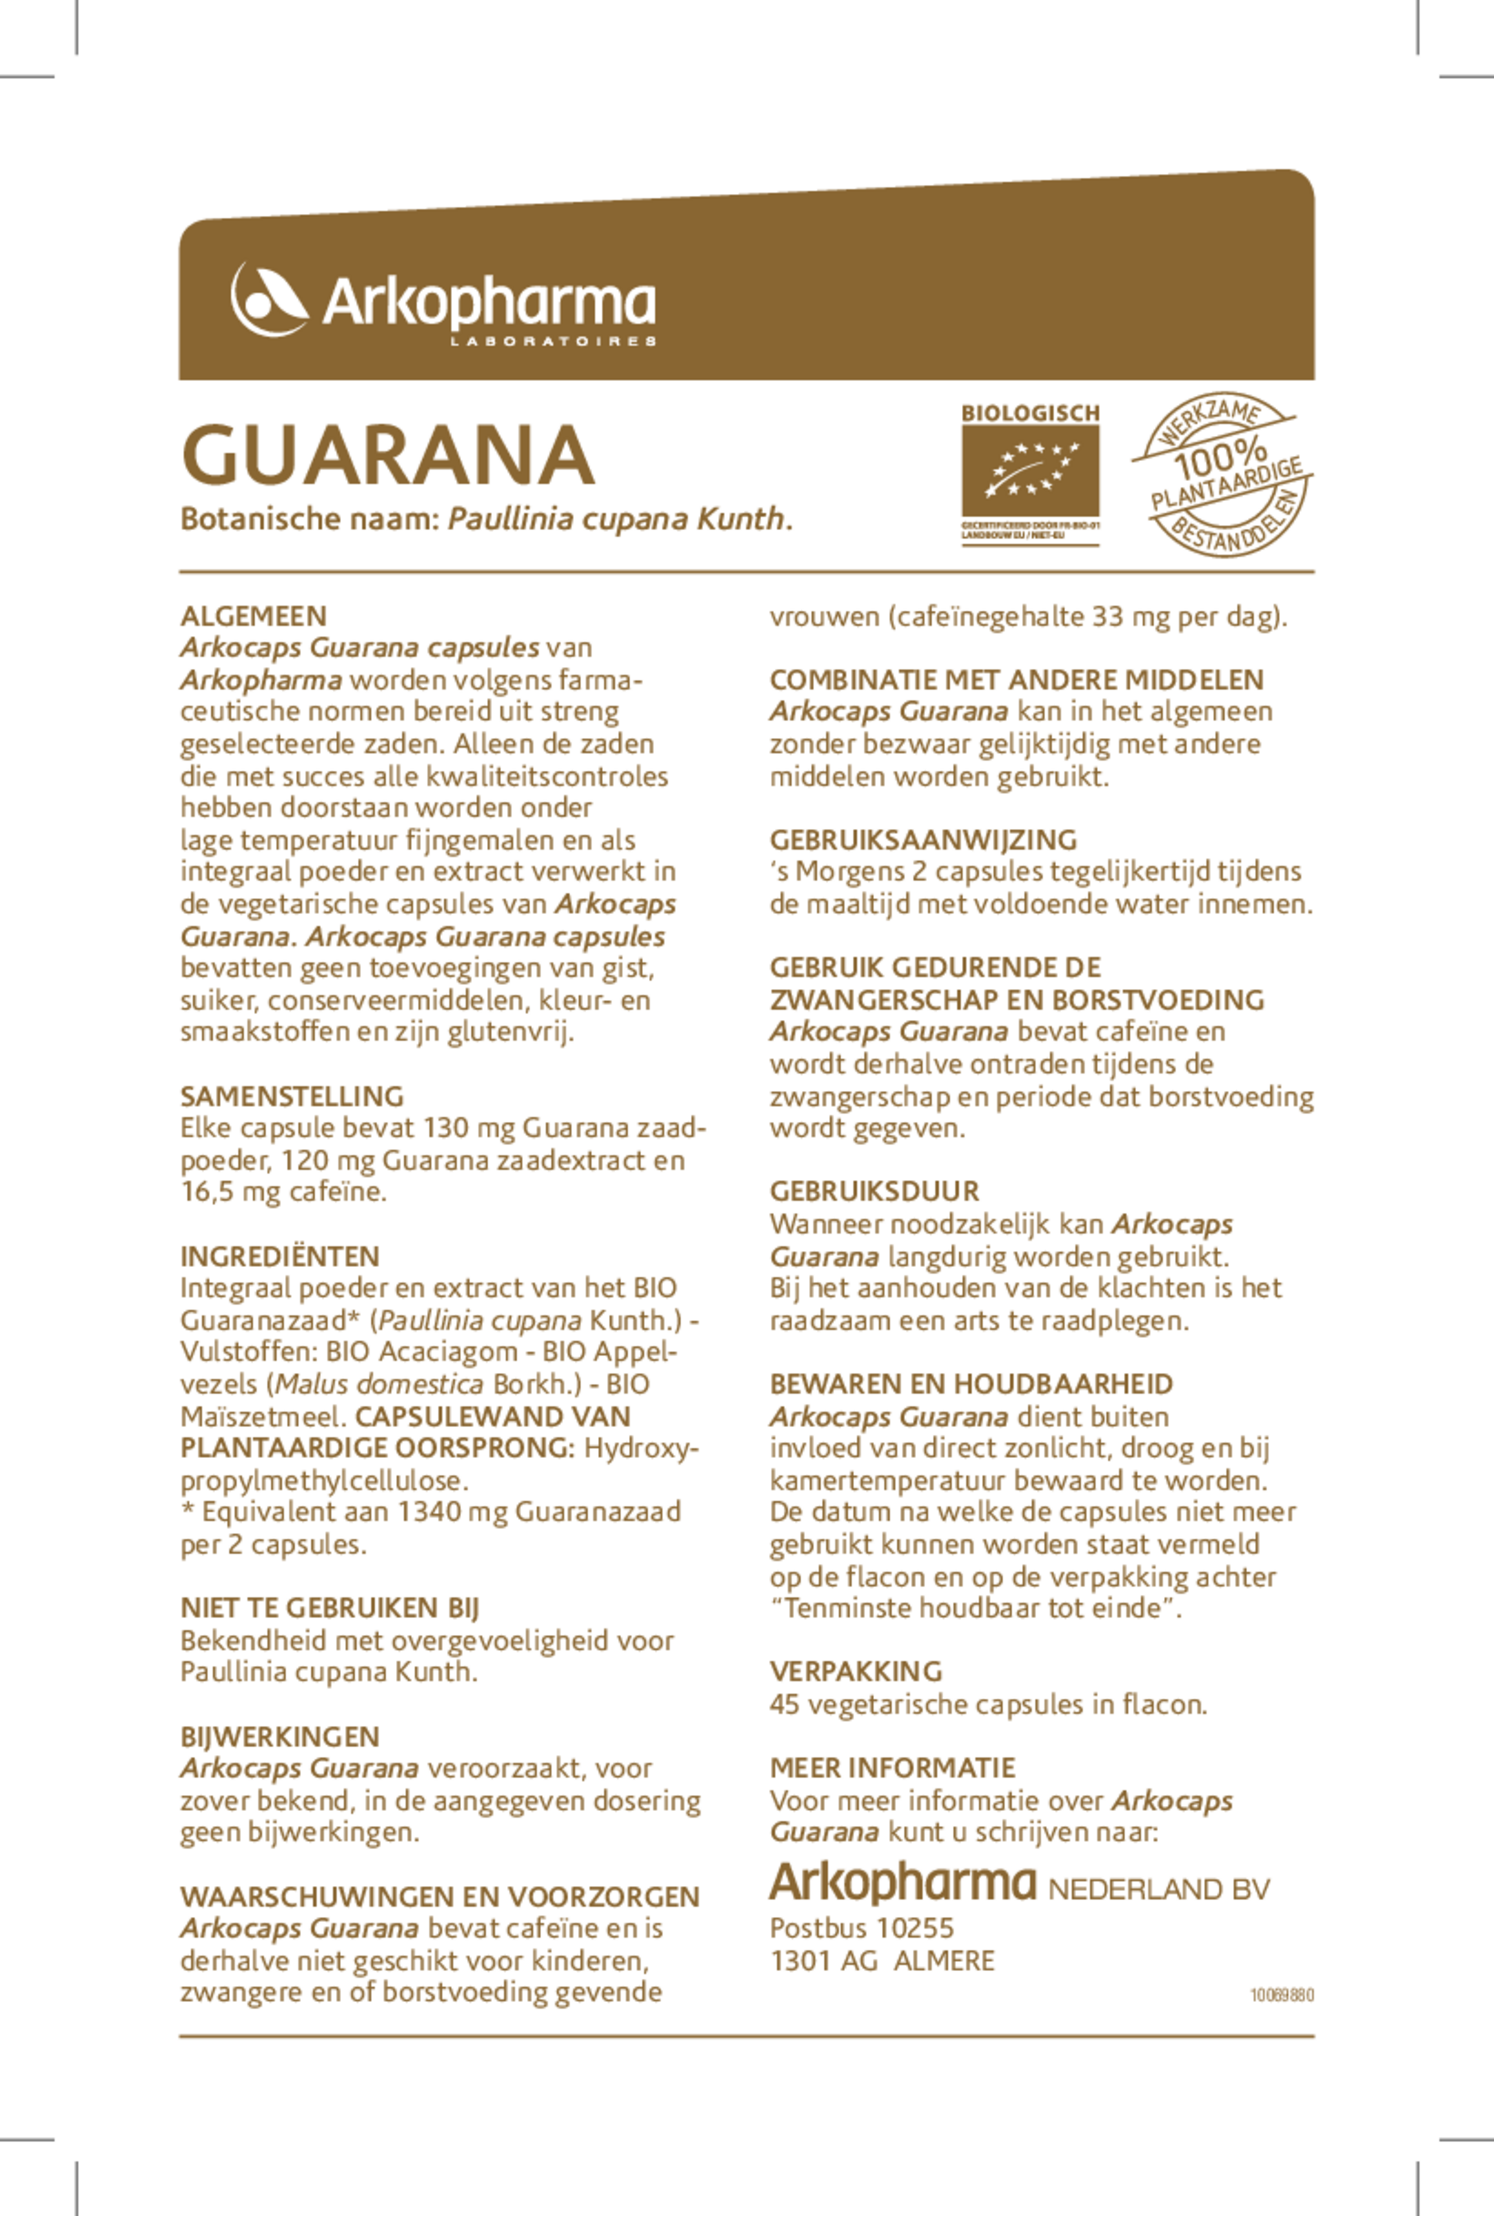 Arkocaps Guarana Biologisch Capsules afbeelding van document #1, gebruiksaanwijzing